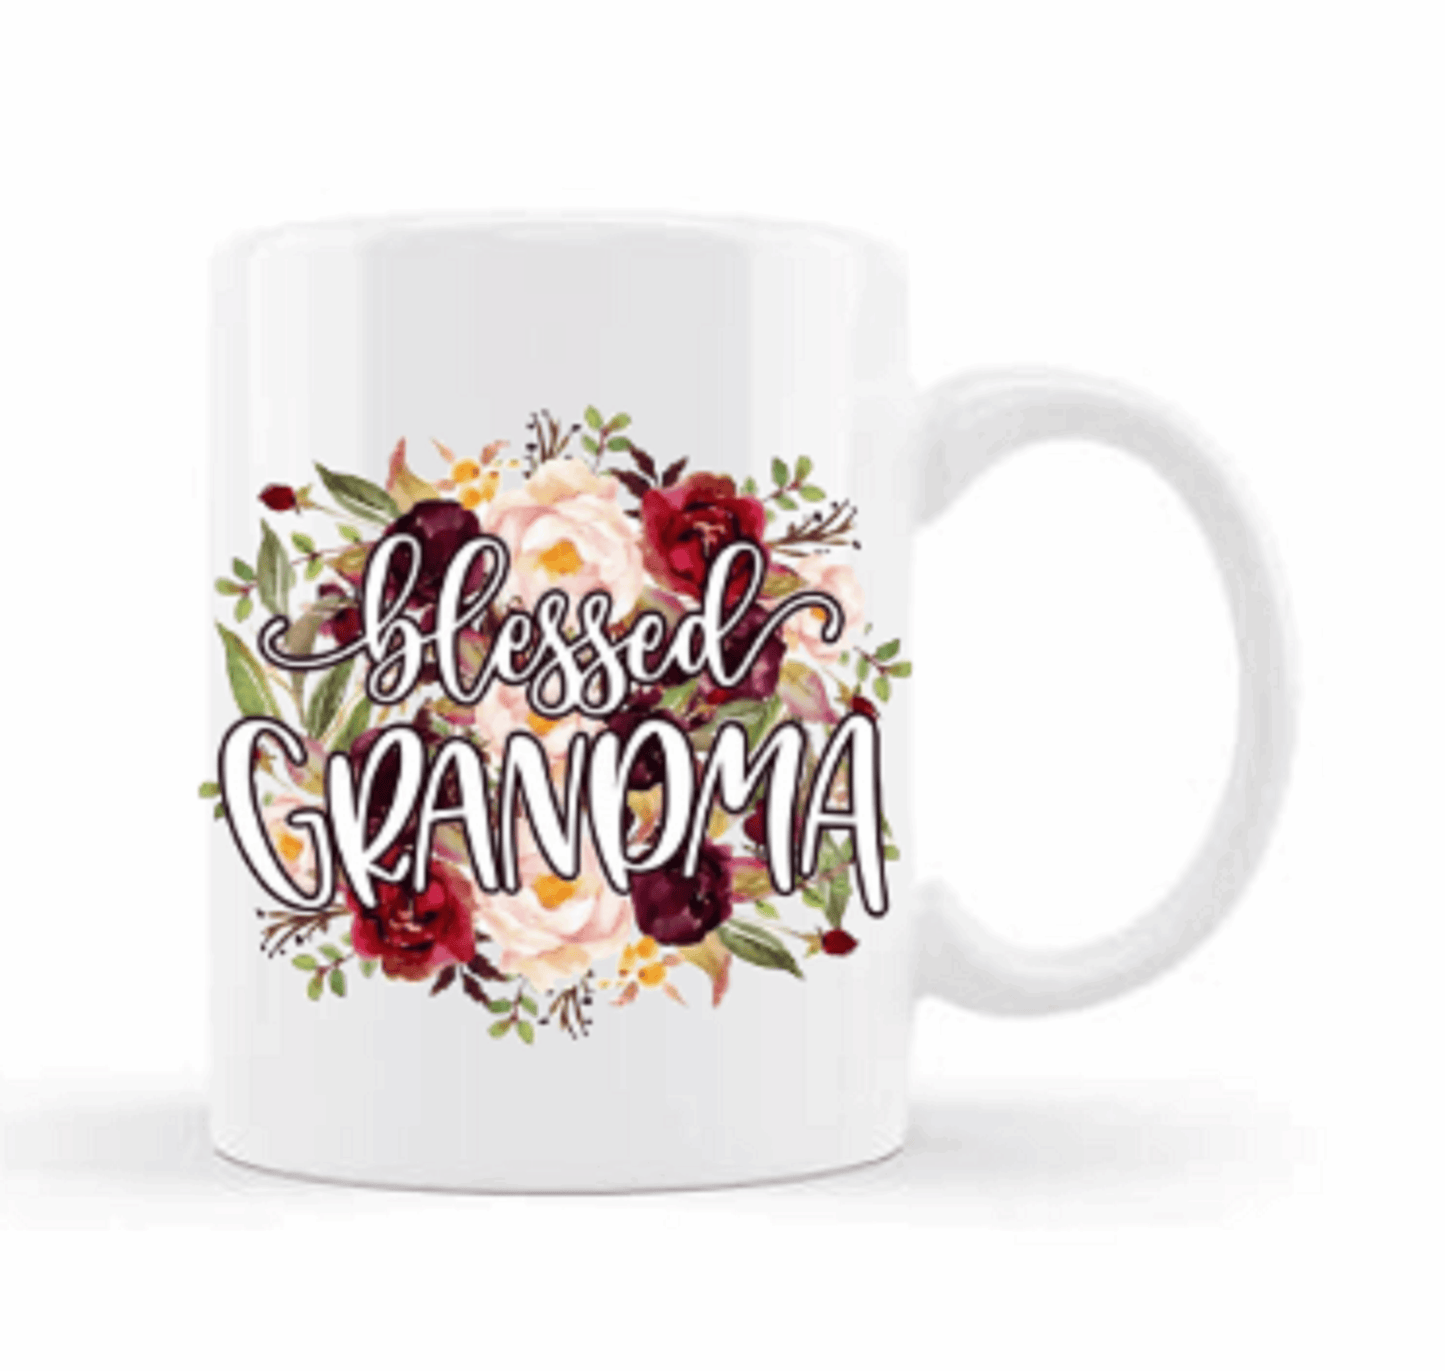  Blessed Grandma Coffee Mug by Free Spirit Accessories sold by Free Spirit Accessories